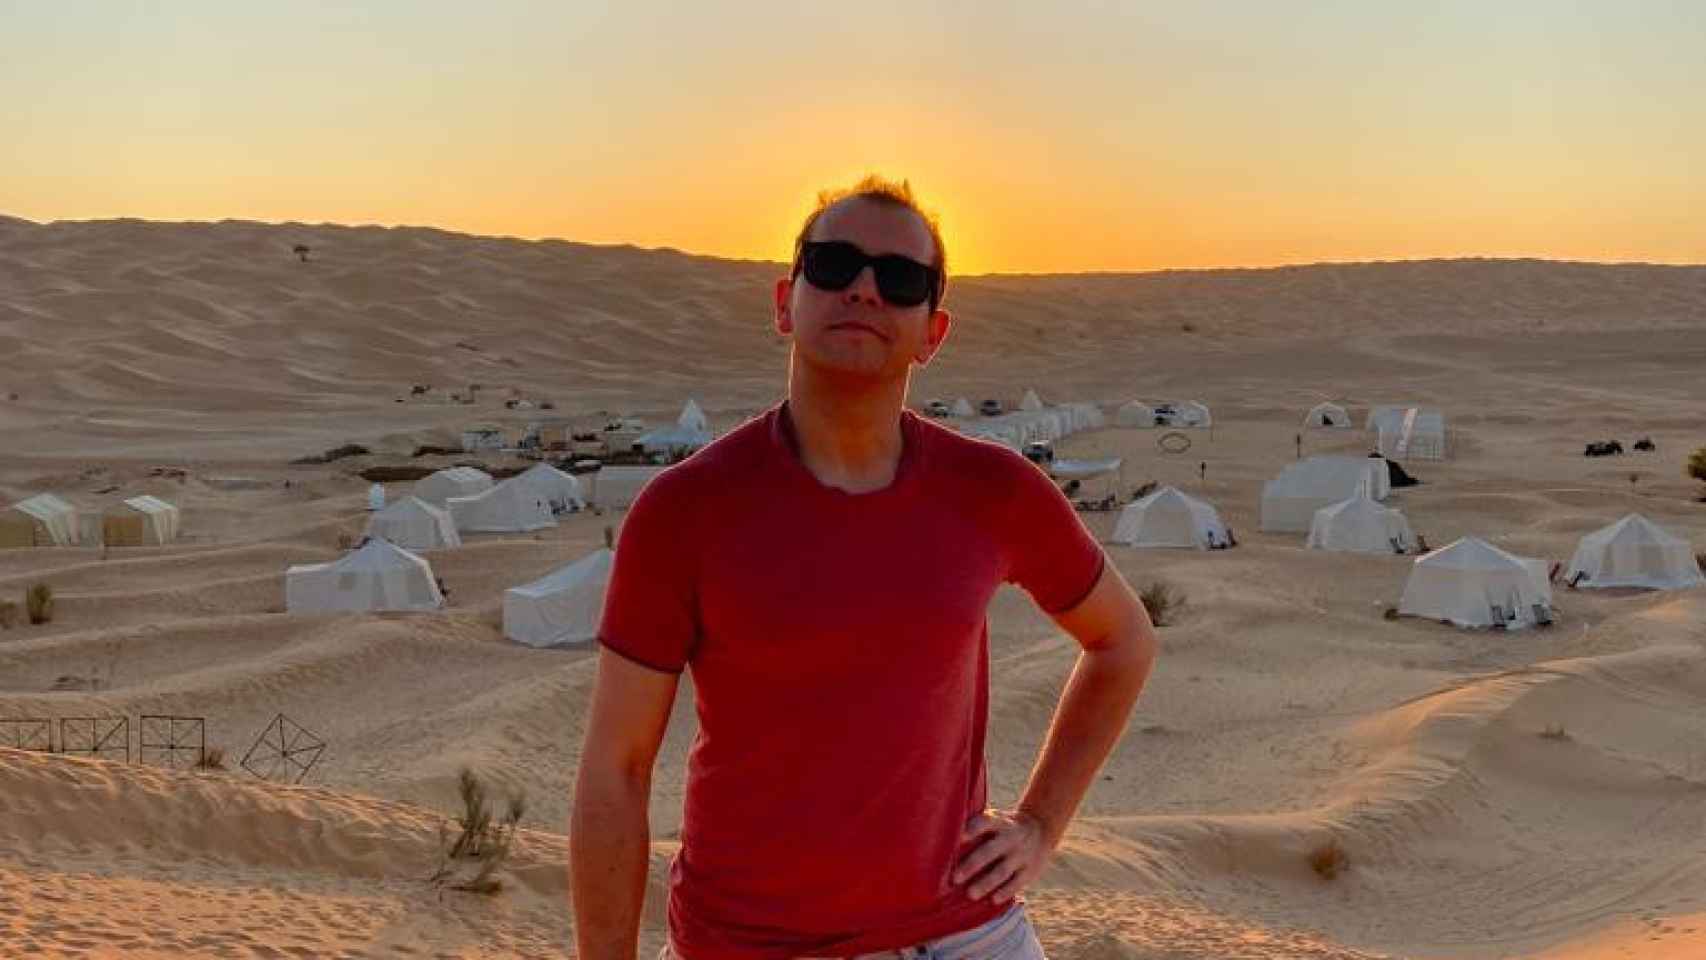 Keller de viaje en el desierto.